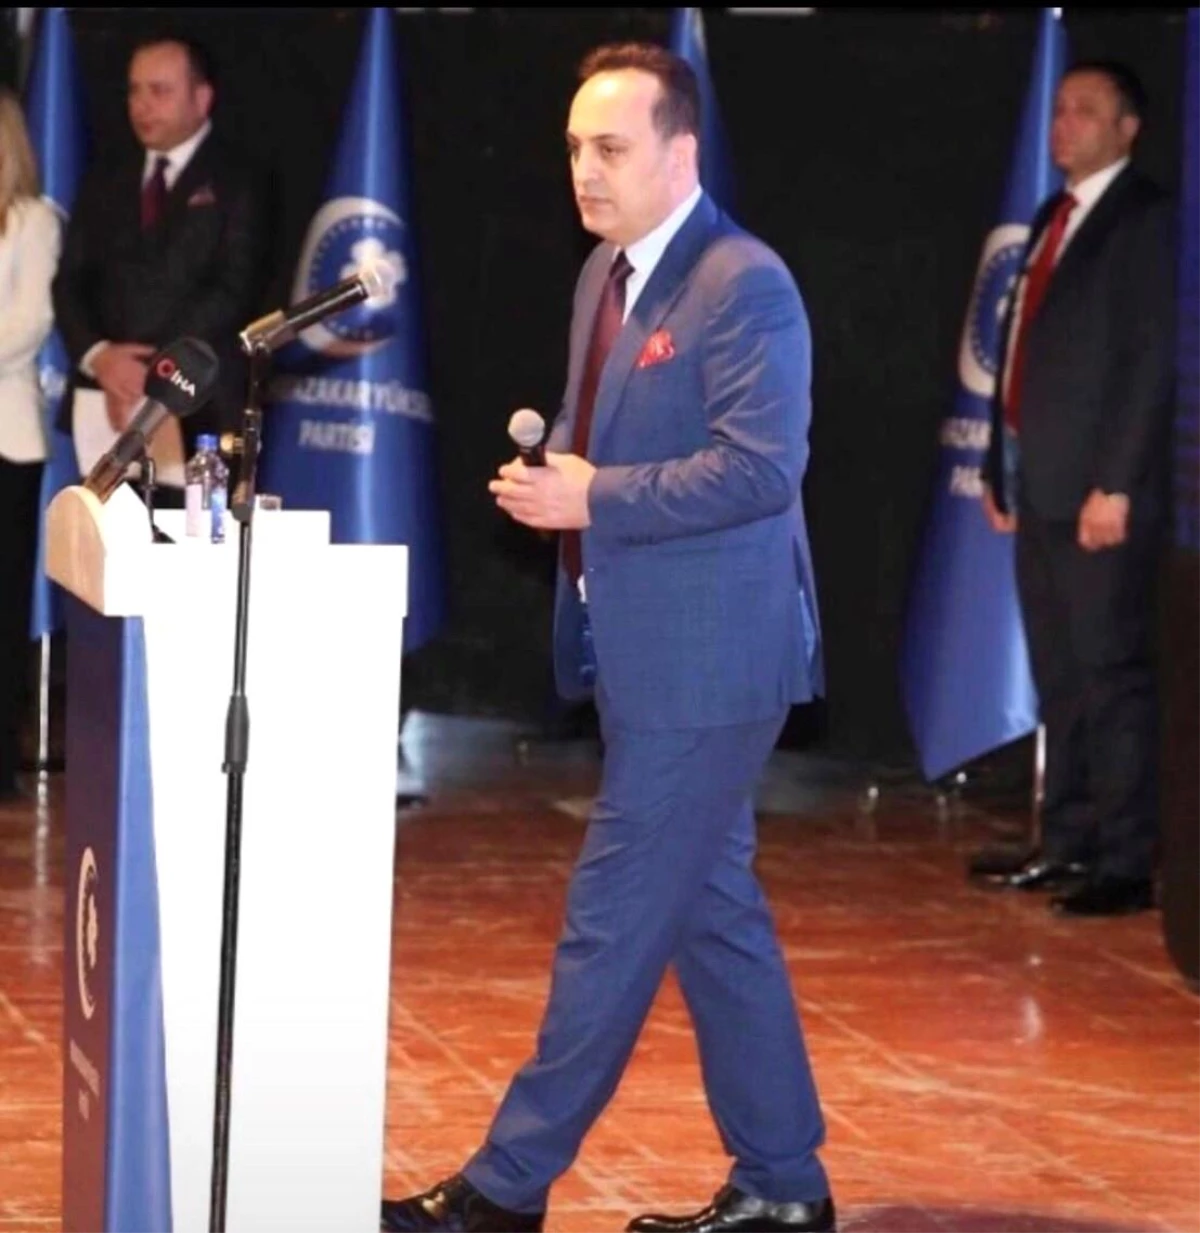 MYP Lideri Ahmet Reyiz Yılmaz: "Başkanlık sistemi devam etmeli"